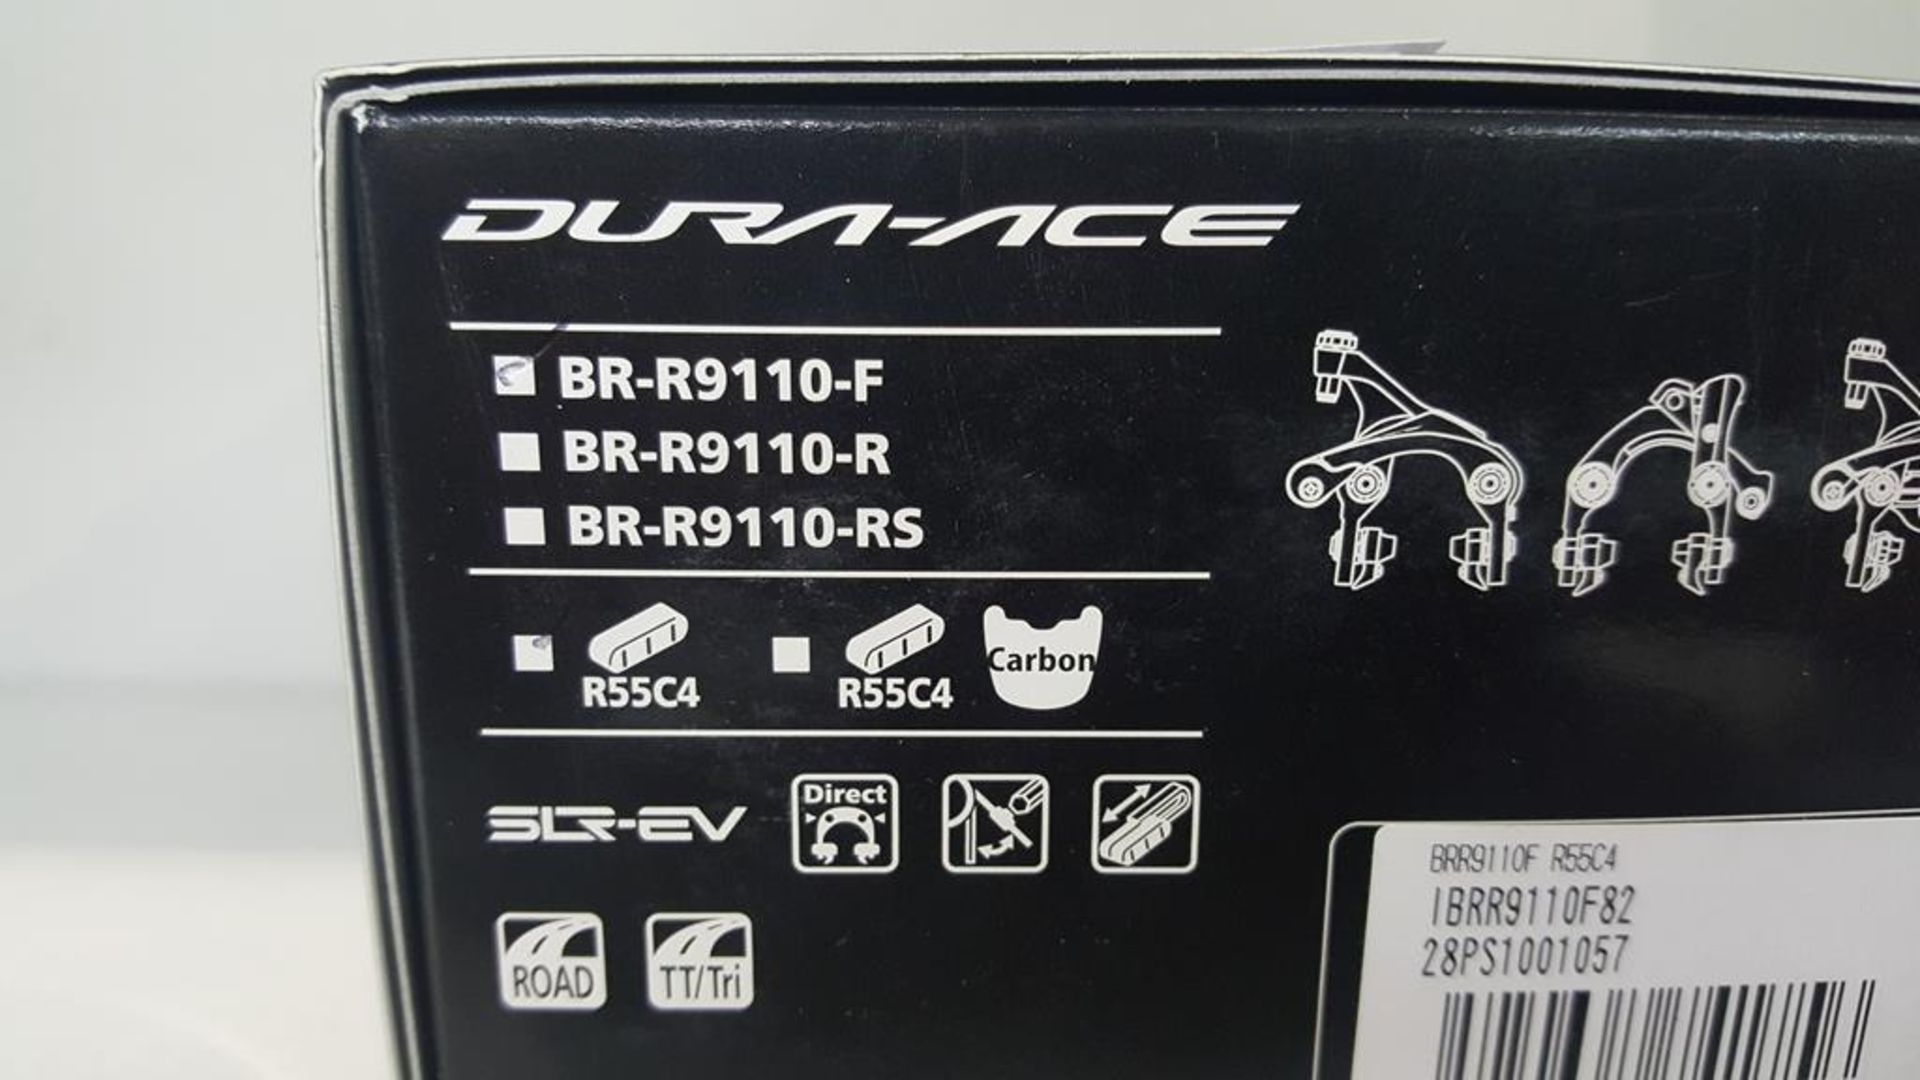 Shimano Dura-Ace BR-9110-F R55C4 Brake Caliper - Image 2 of 3